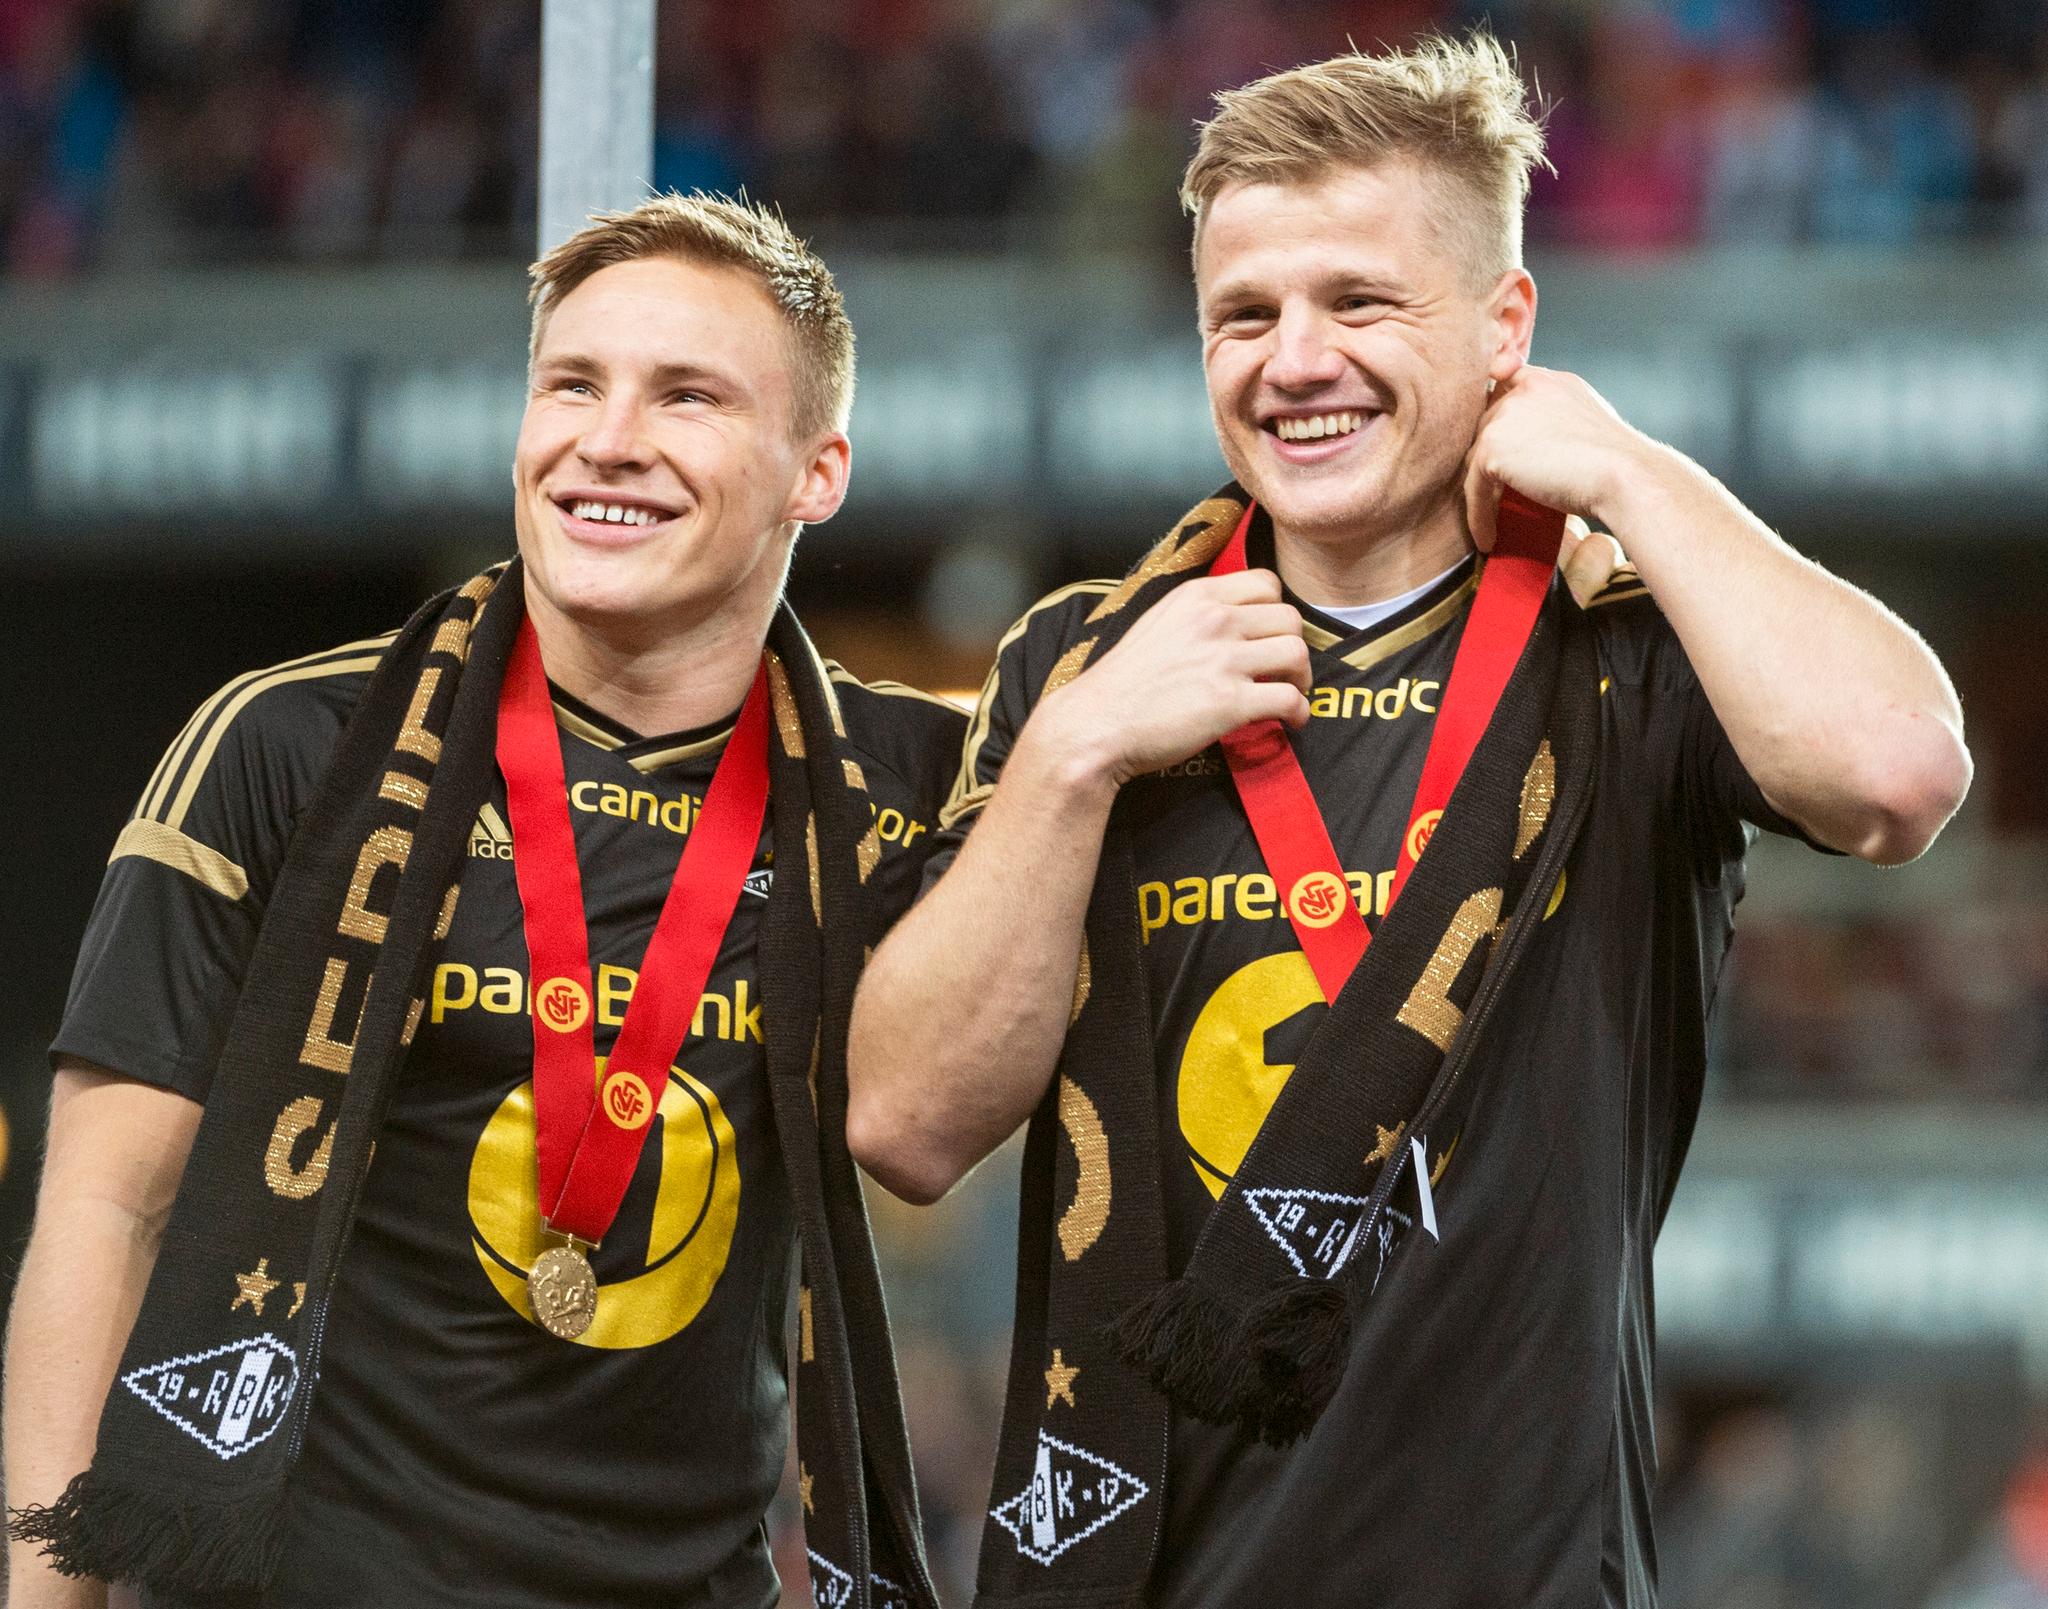 VIKTIG BRIKKE: Jonas Svensson (venstre) og Fredrik Midtsjø (høyre) var begge sentrale for Rosenborg-laget til Kåre Ingebrigtsen. De spilte også fire år sammen i AZ, og skal nå spille mot hverandre i den tyrkiske ligaen. Svensson spiller nå for Adana Demirspor.